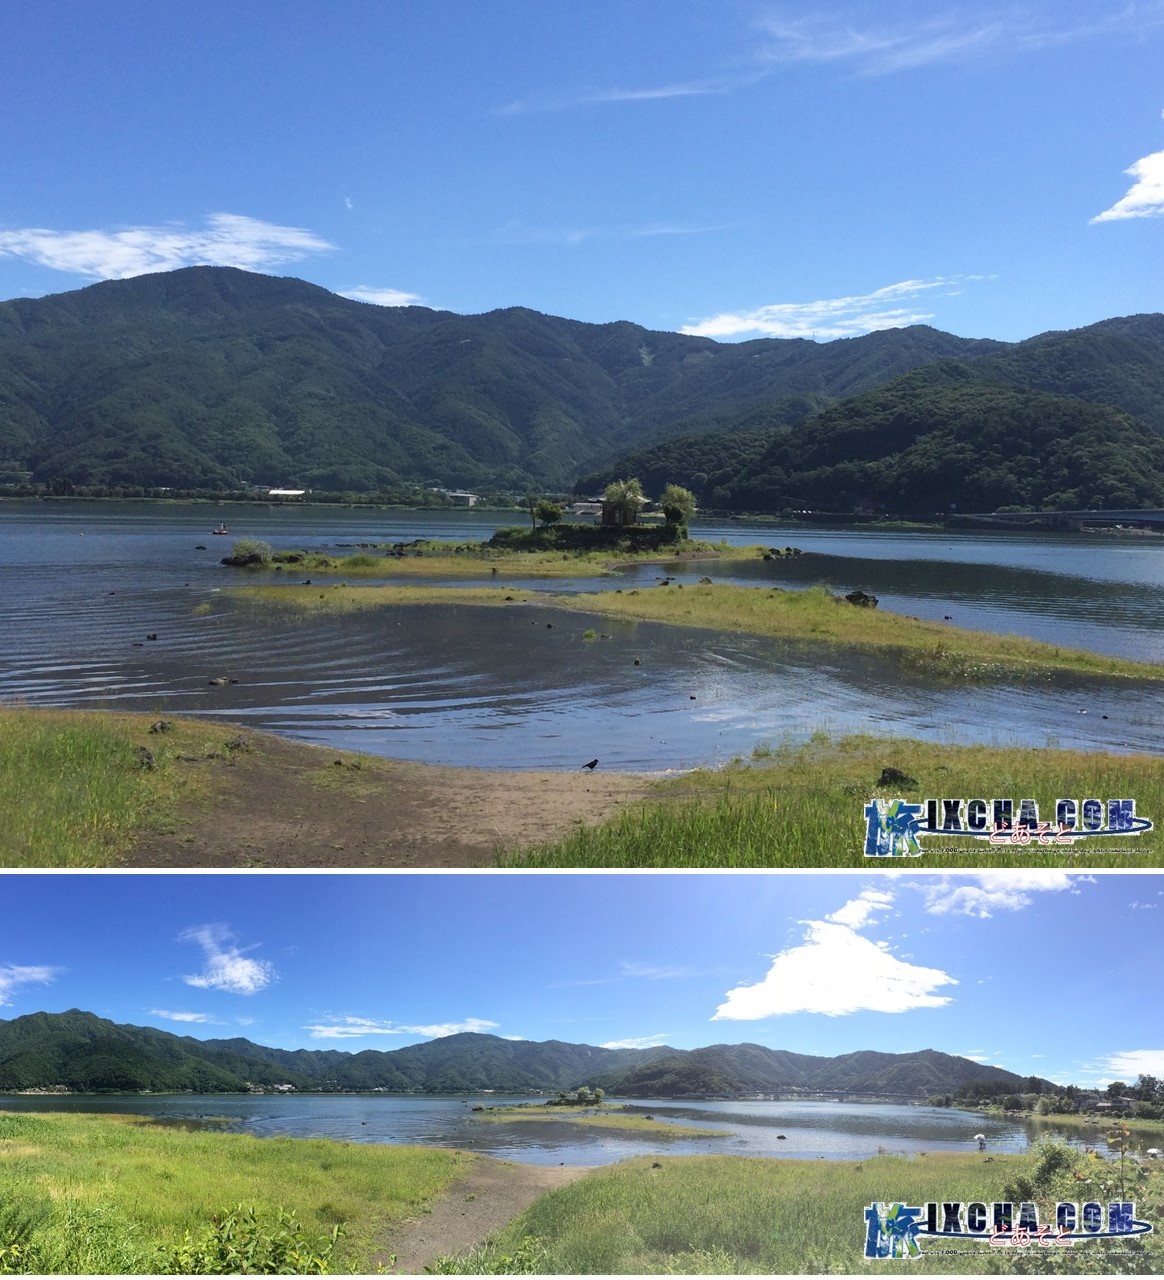 iPhoneで撮影した“六角堂”限界まで拡大しました。（これ以上大きく撮れますが、ぼやけるのでこれが限界）　ついでに富士山もパシャリ！　晴れた日の河口湖散策は富士山が見れたり、綺麗な湖で水遊びしたりと子供から大人まで楽しめるスポットです！皆様も遊びに行かれては如何でしょうか！有難うございました。 